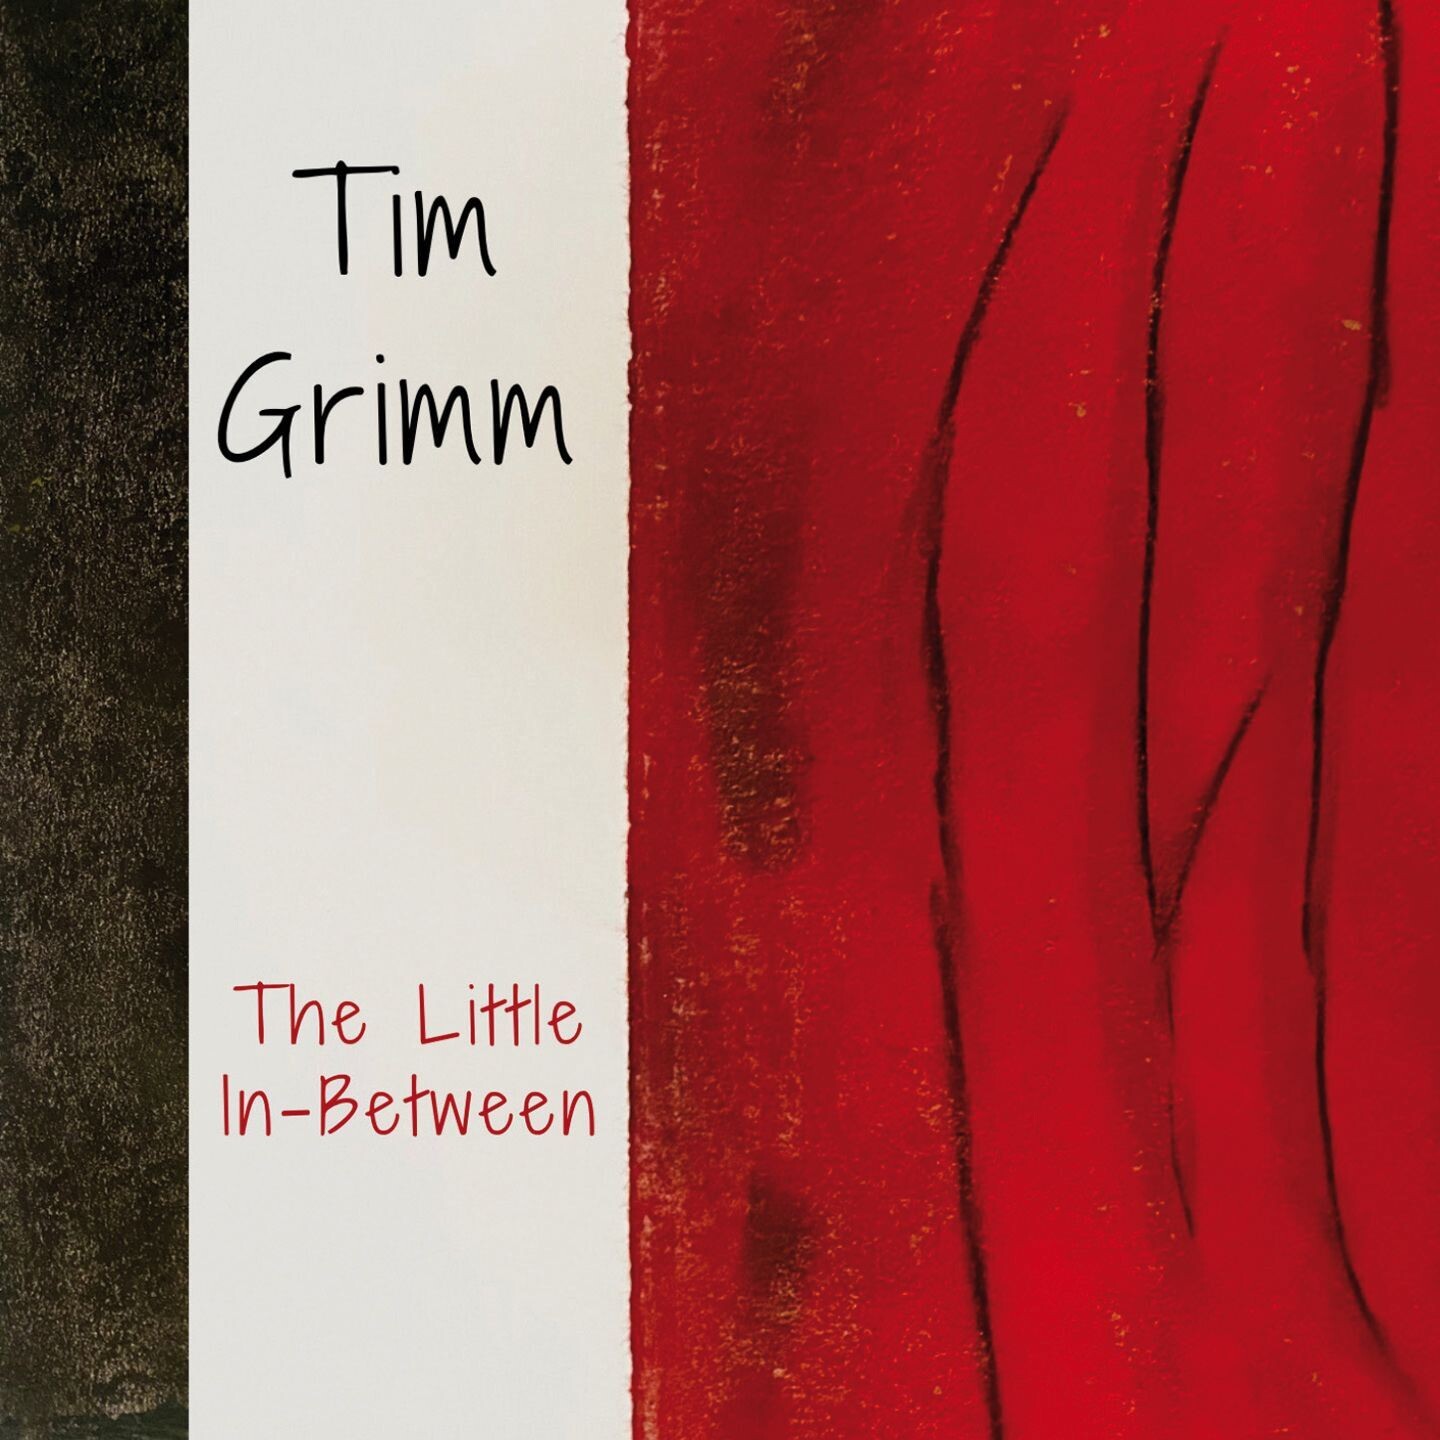 Tim Grimm - The Little In-Between (Digitale Wav 16 bit)